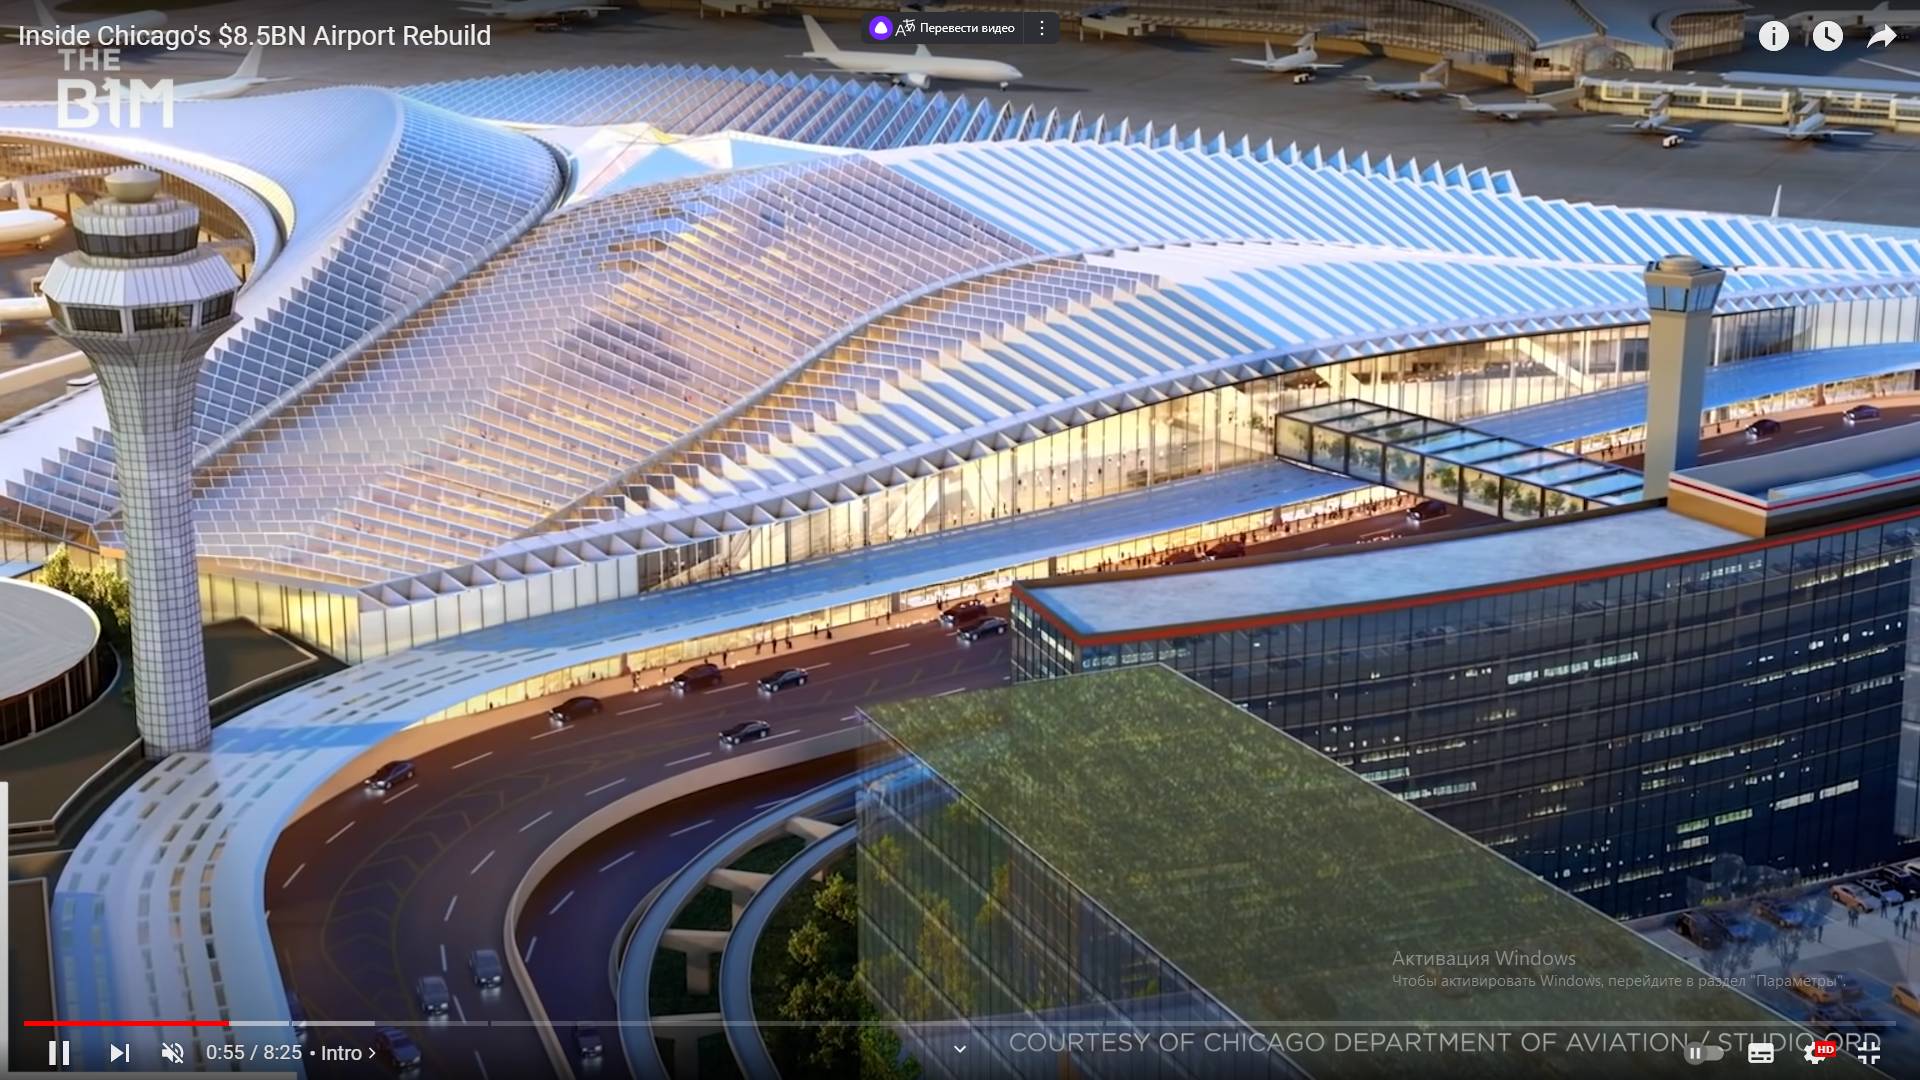 Цитата из видео «Внутри реконструкции аэропорта Чикаго стоимостью 8,5 млрд долларов» пользователя The B1M, youtube.com